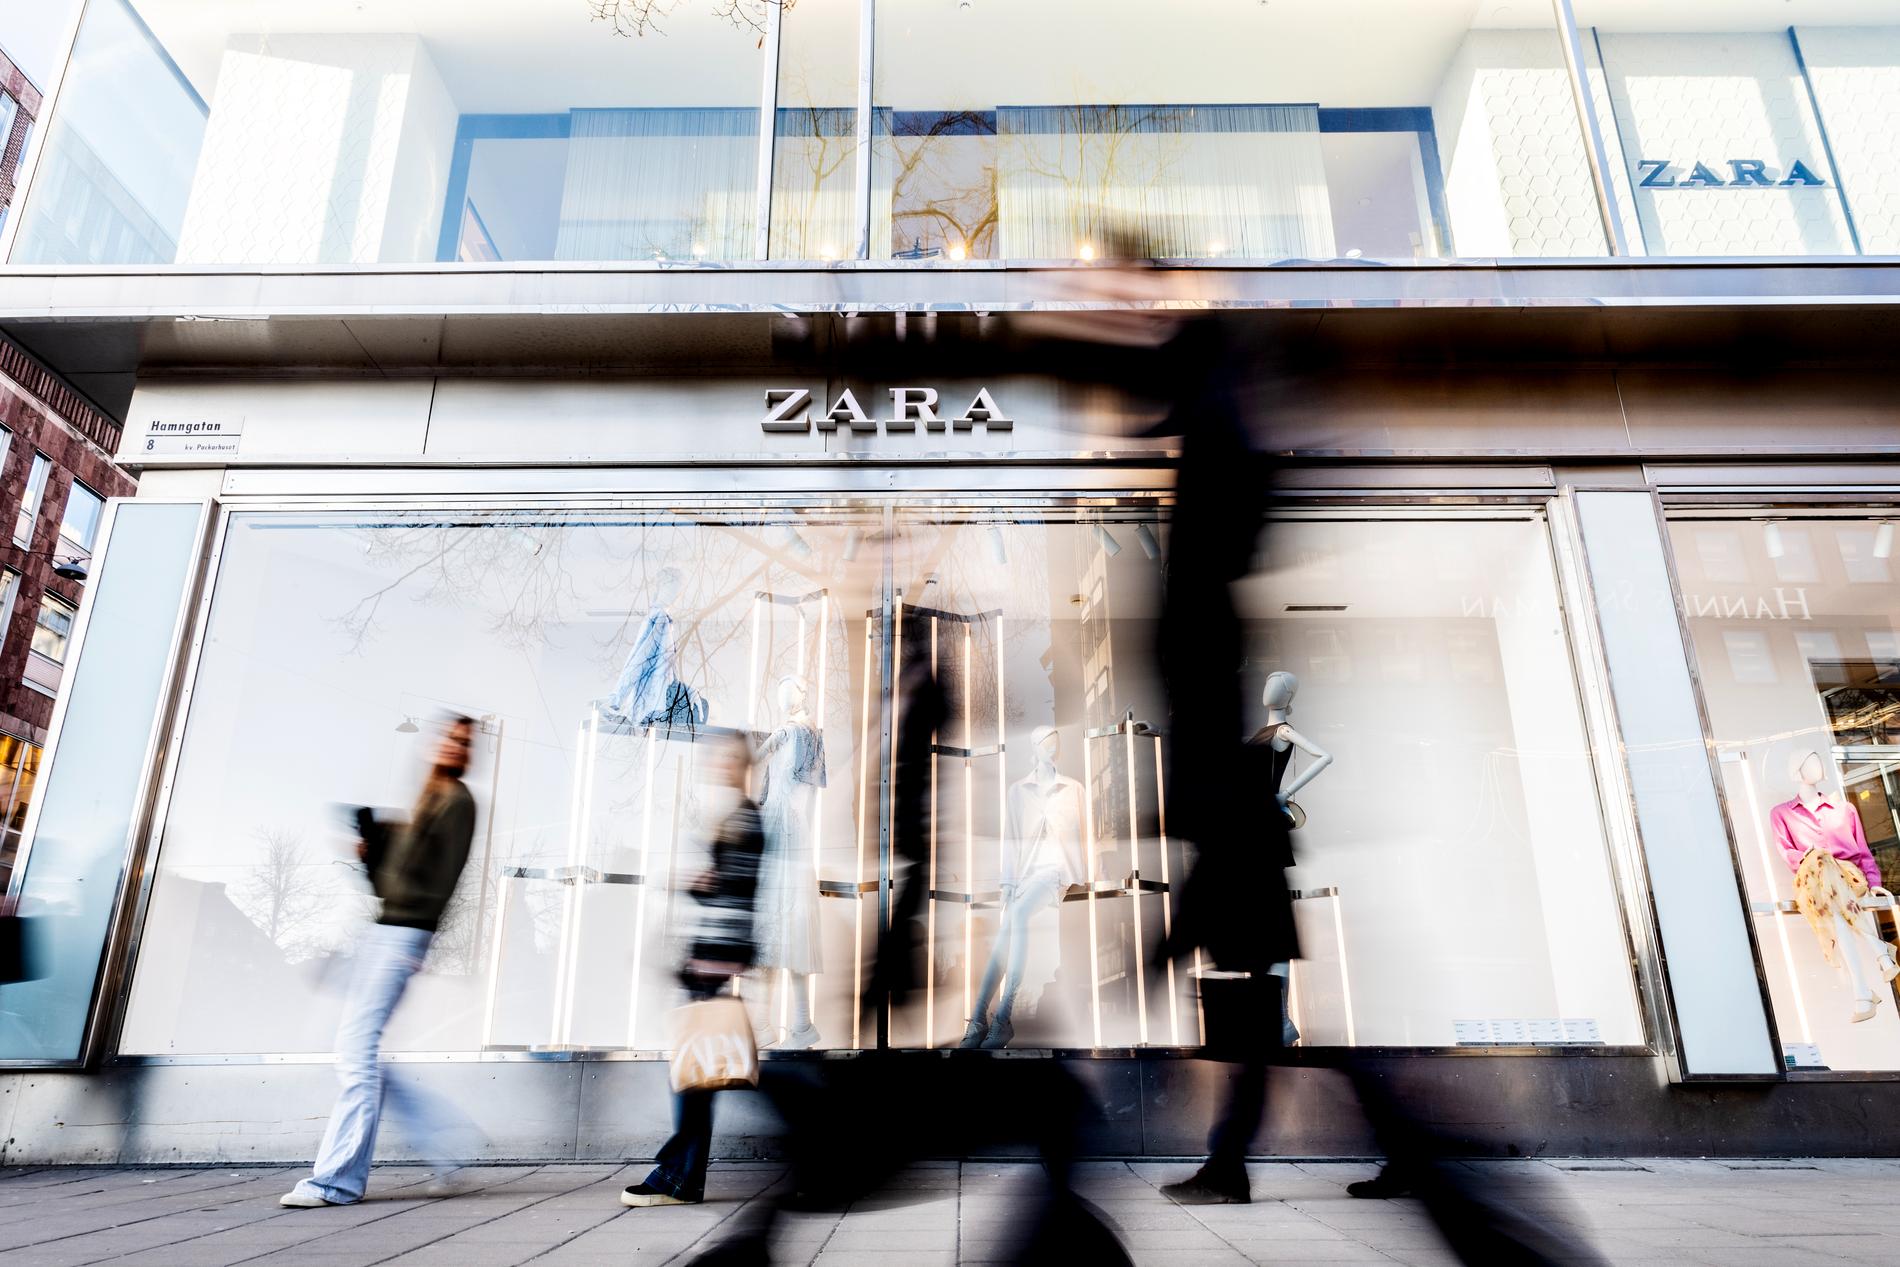 Flera av de anställda Aftonbladet talat med beskriver en robotartad tillvaro på Zara. 